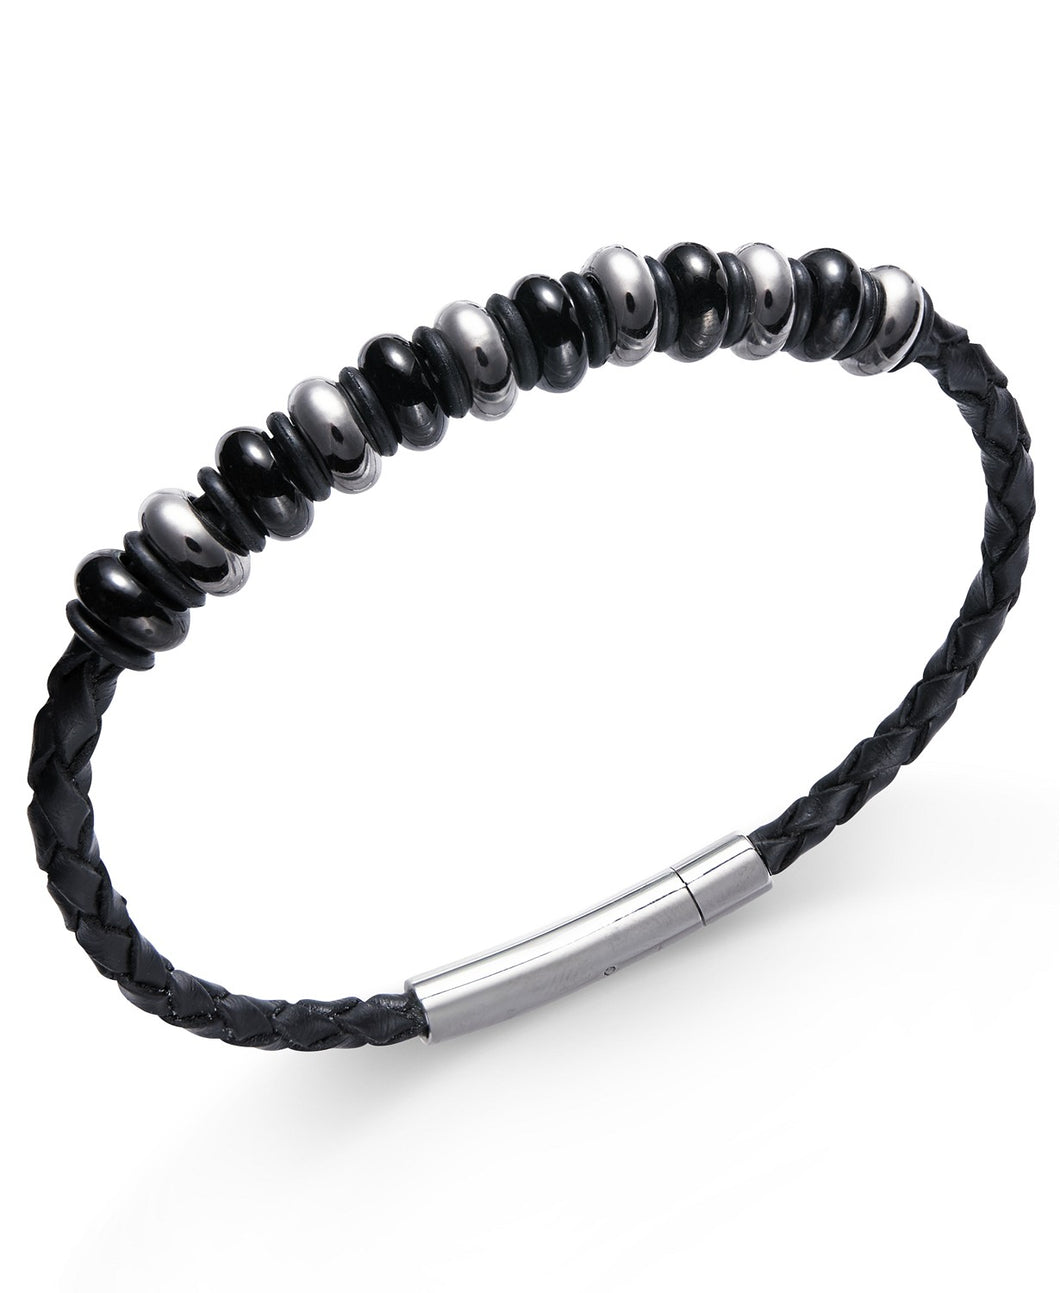 Men's Stainless Steel Multi-Bead Leather Bracelet